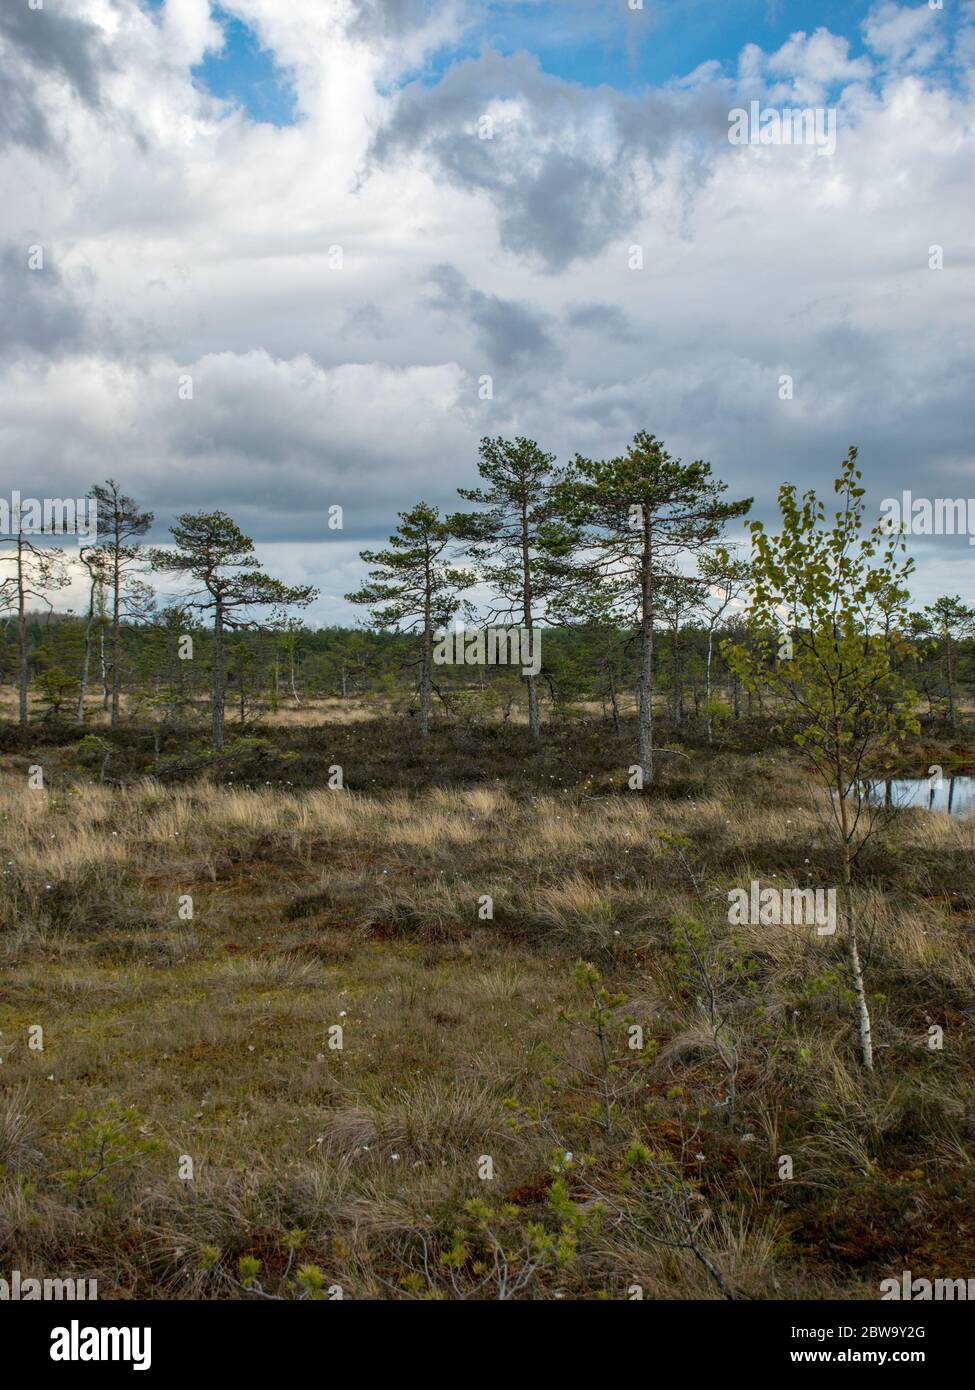 Nice landscape with old peat bog and swamp vegetation, Niedraju Pilka bog, Latvia Stock Photo